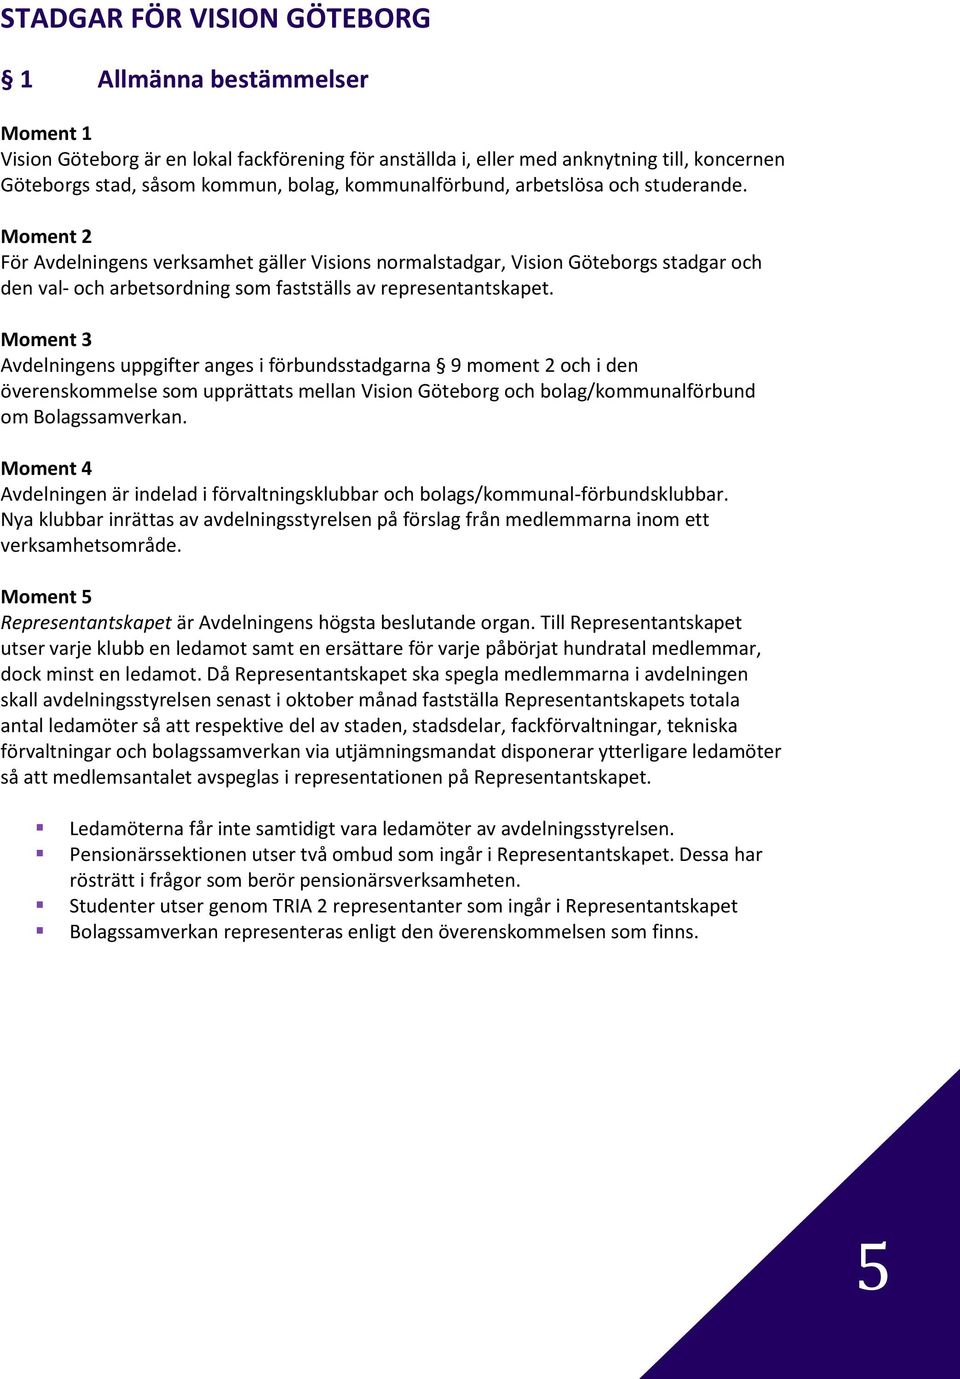 Moment 3 Avdelningens uppgifter anges i förbundsstadgarna 9 moment 2 och i den överenskommelse som upprättats mellan Vision Göteborg och bolag/kommunalförbund om Bolagssamverkan.